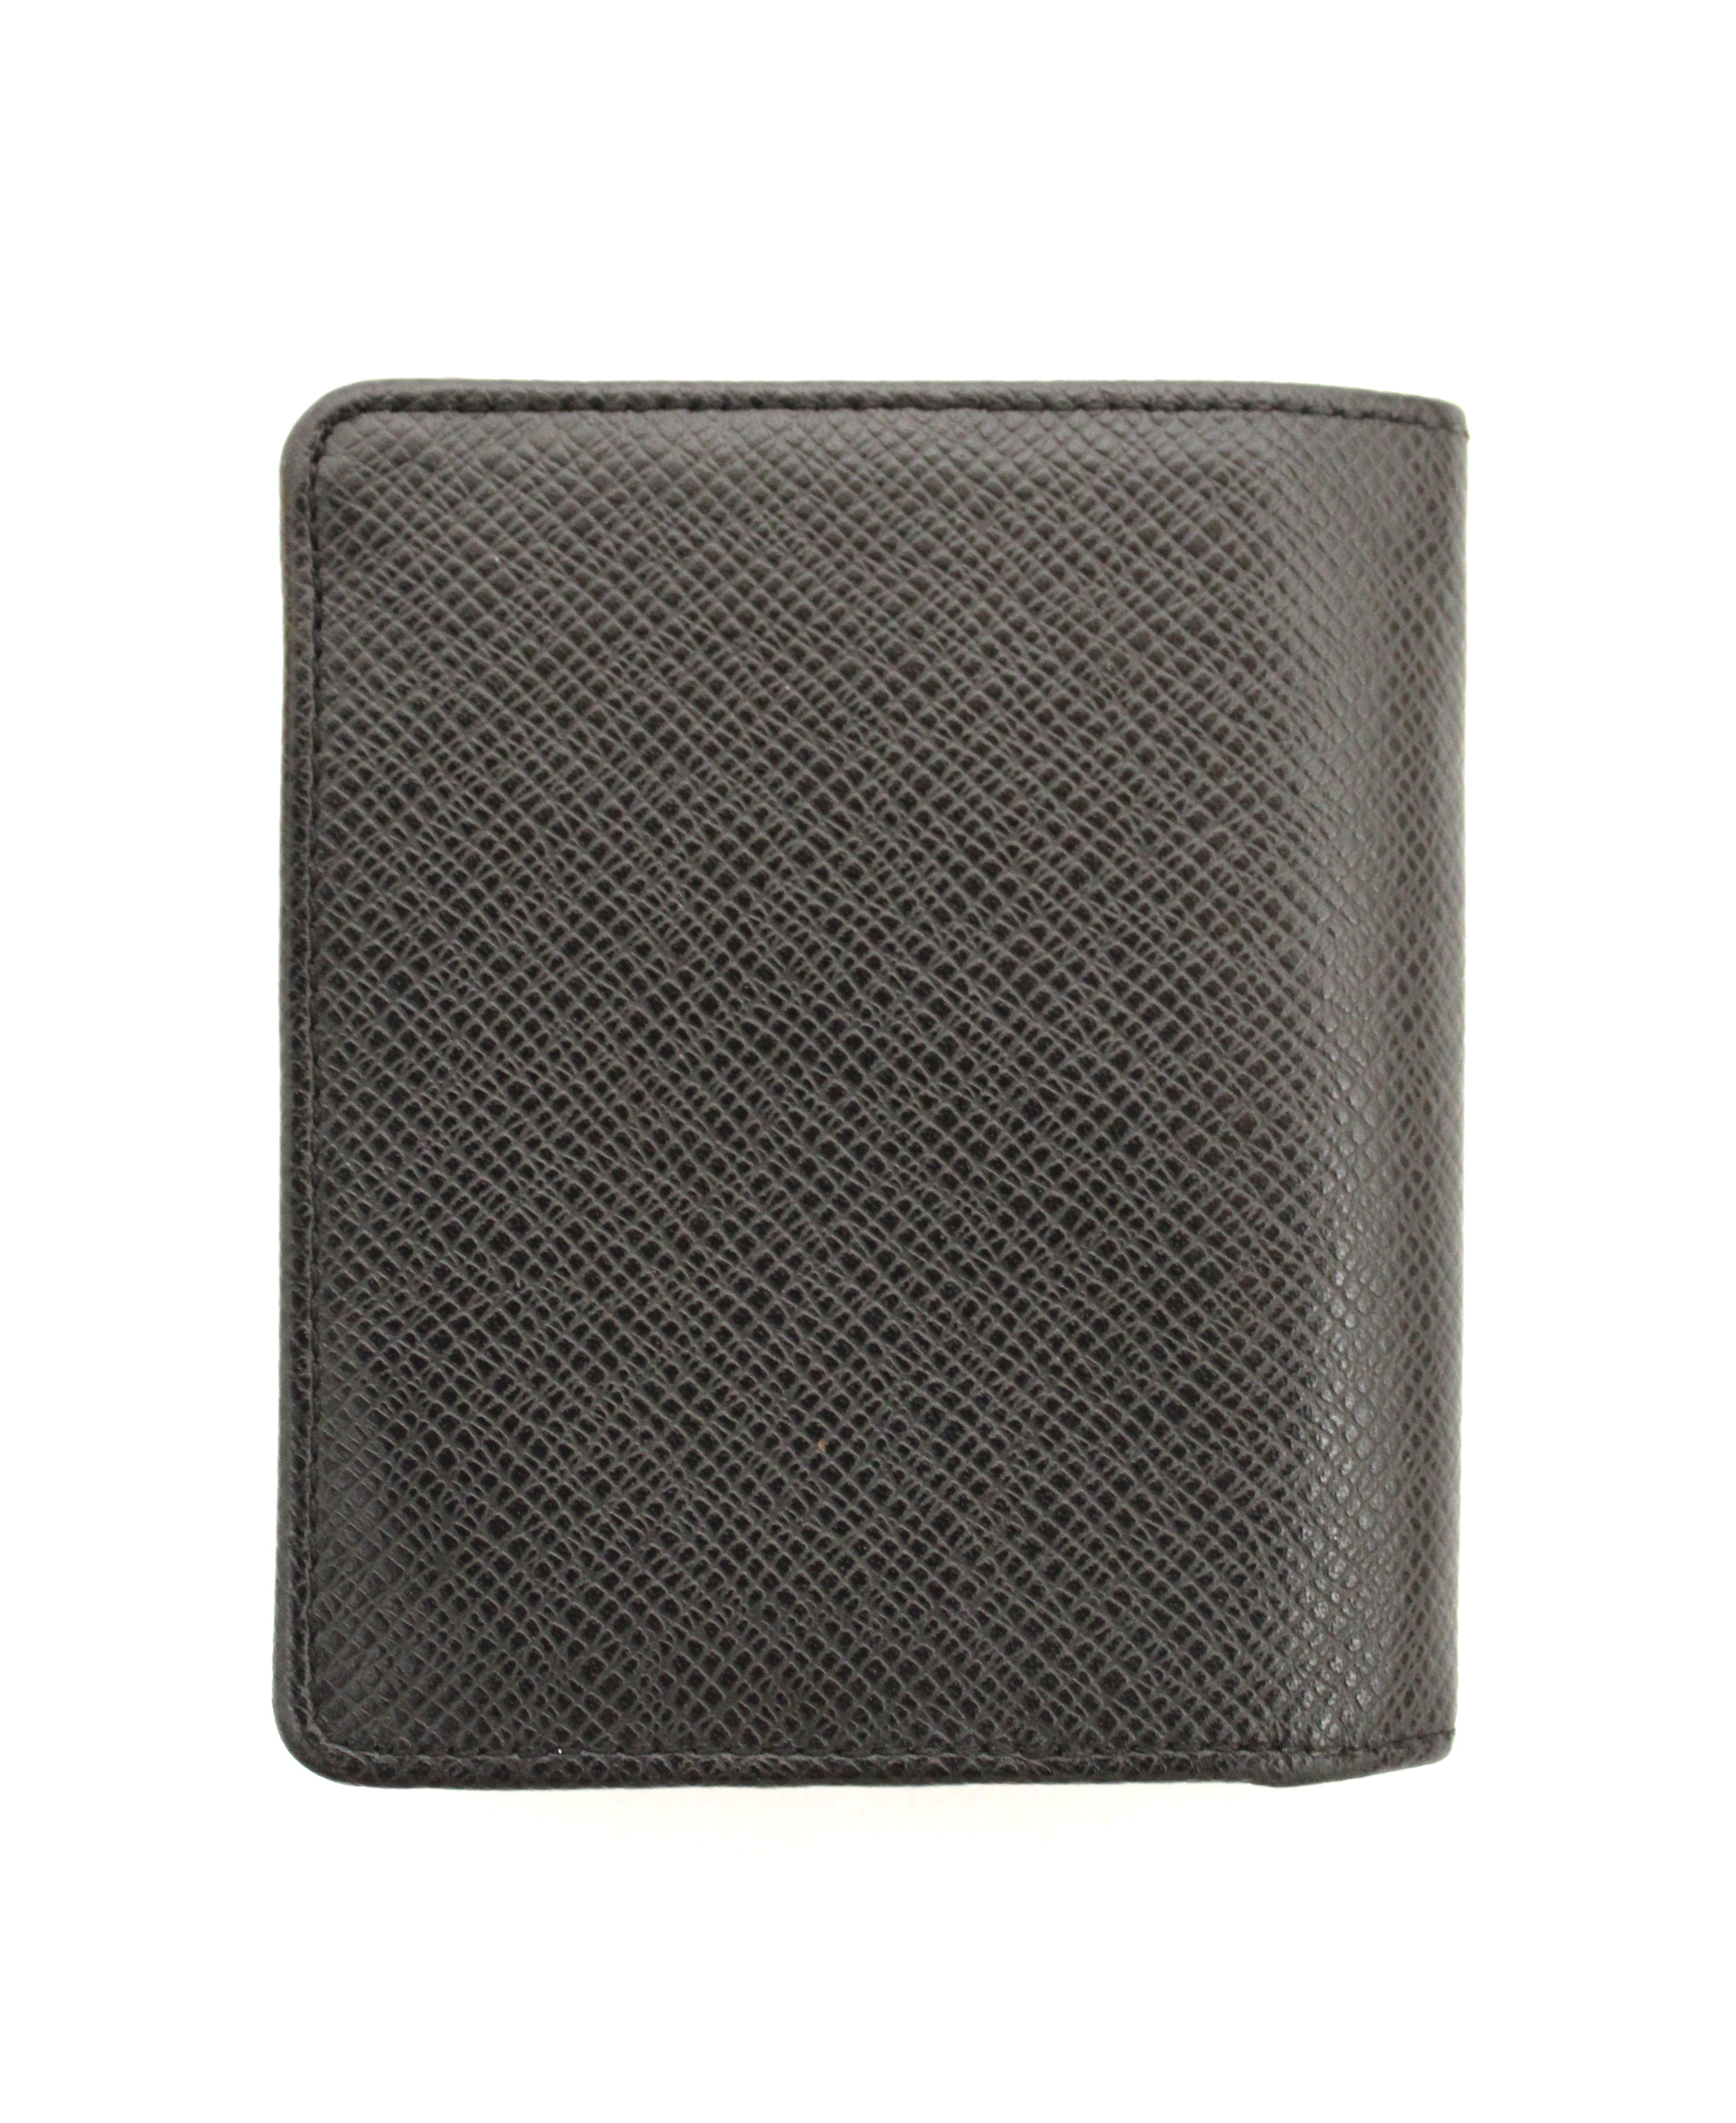 Louis Vuitton Taiga Wallet